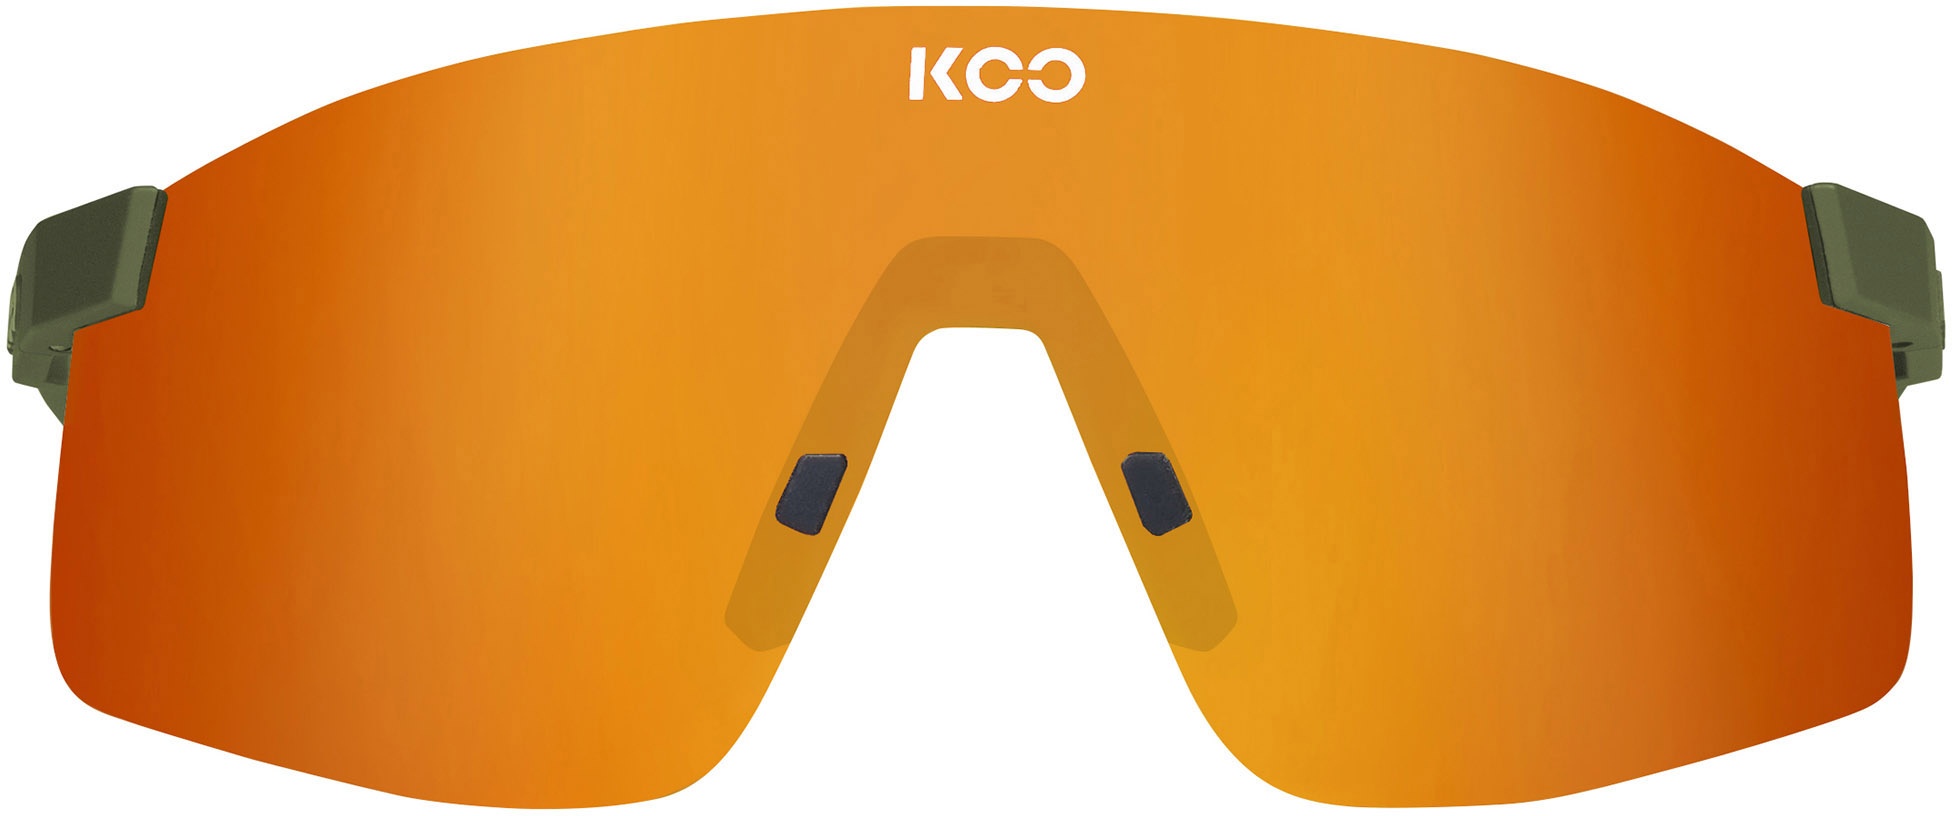 Beklædning - Cykelbriller - KOO Nova Cykelbriller - Grøn/Orange